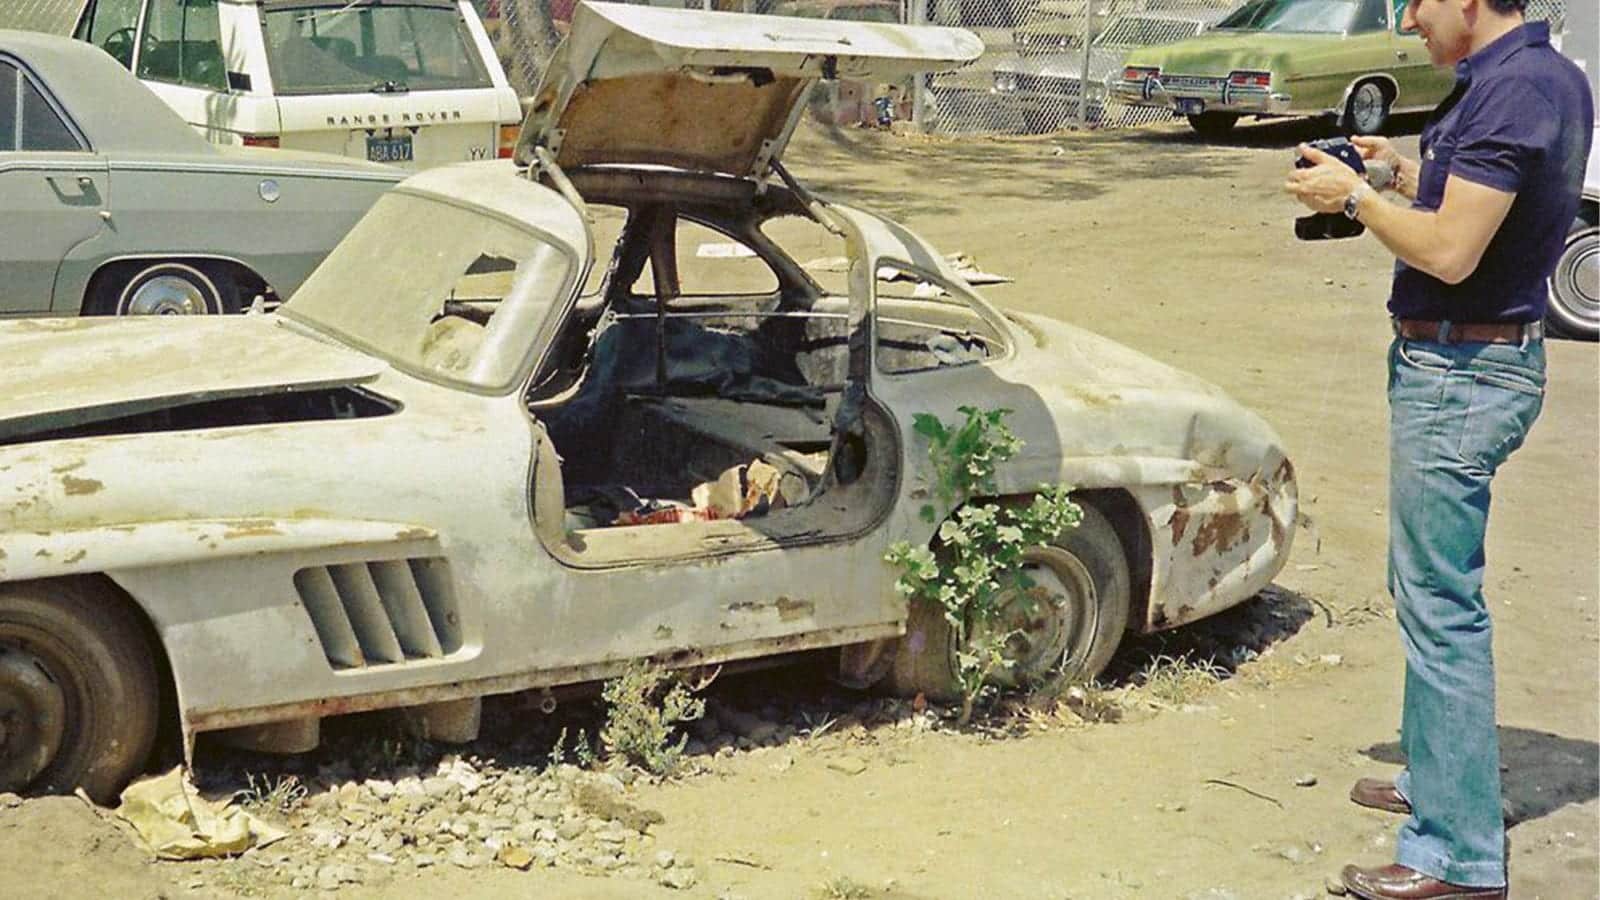 Mercedes Gullwing in scrapyard